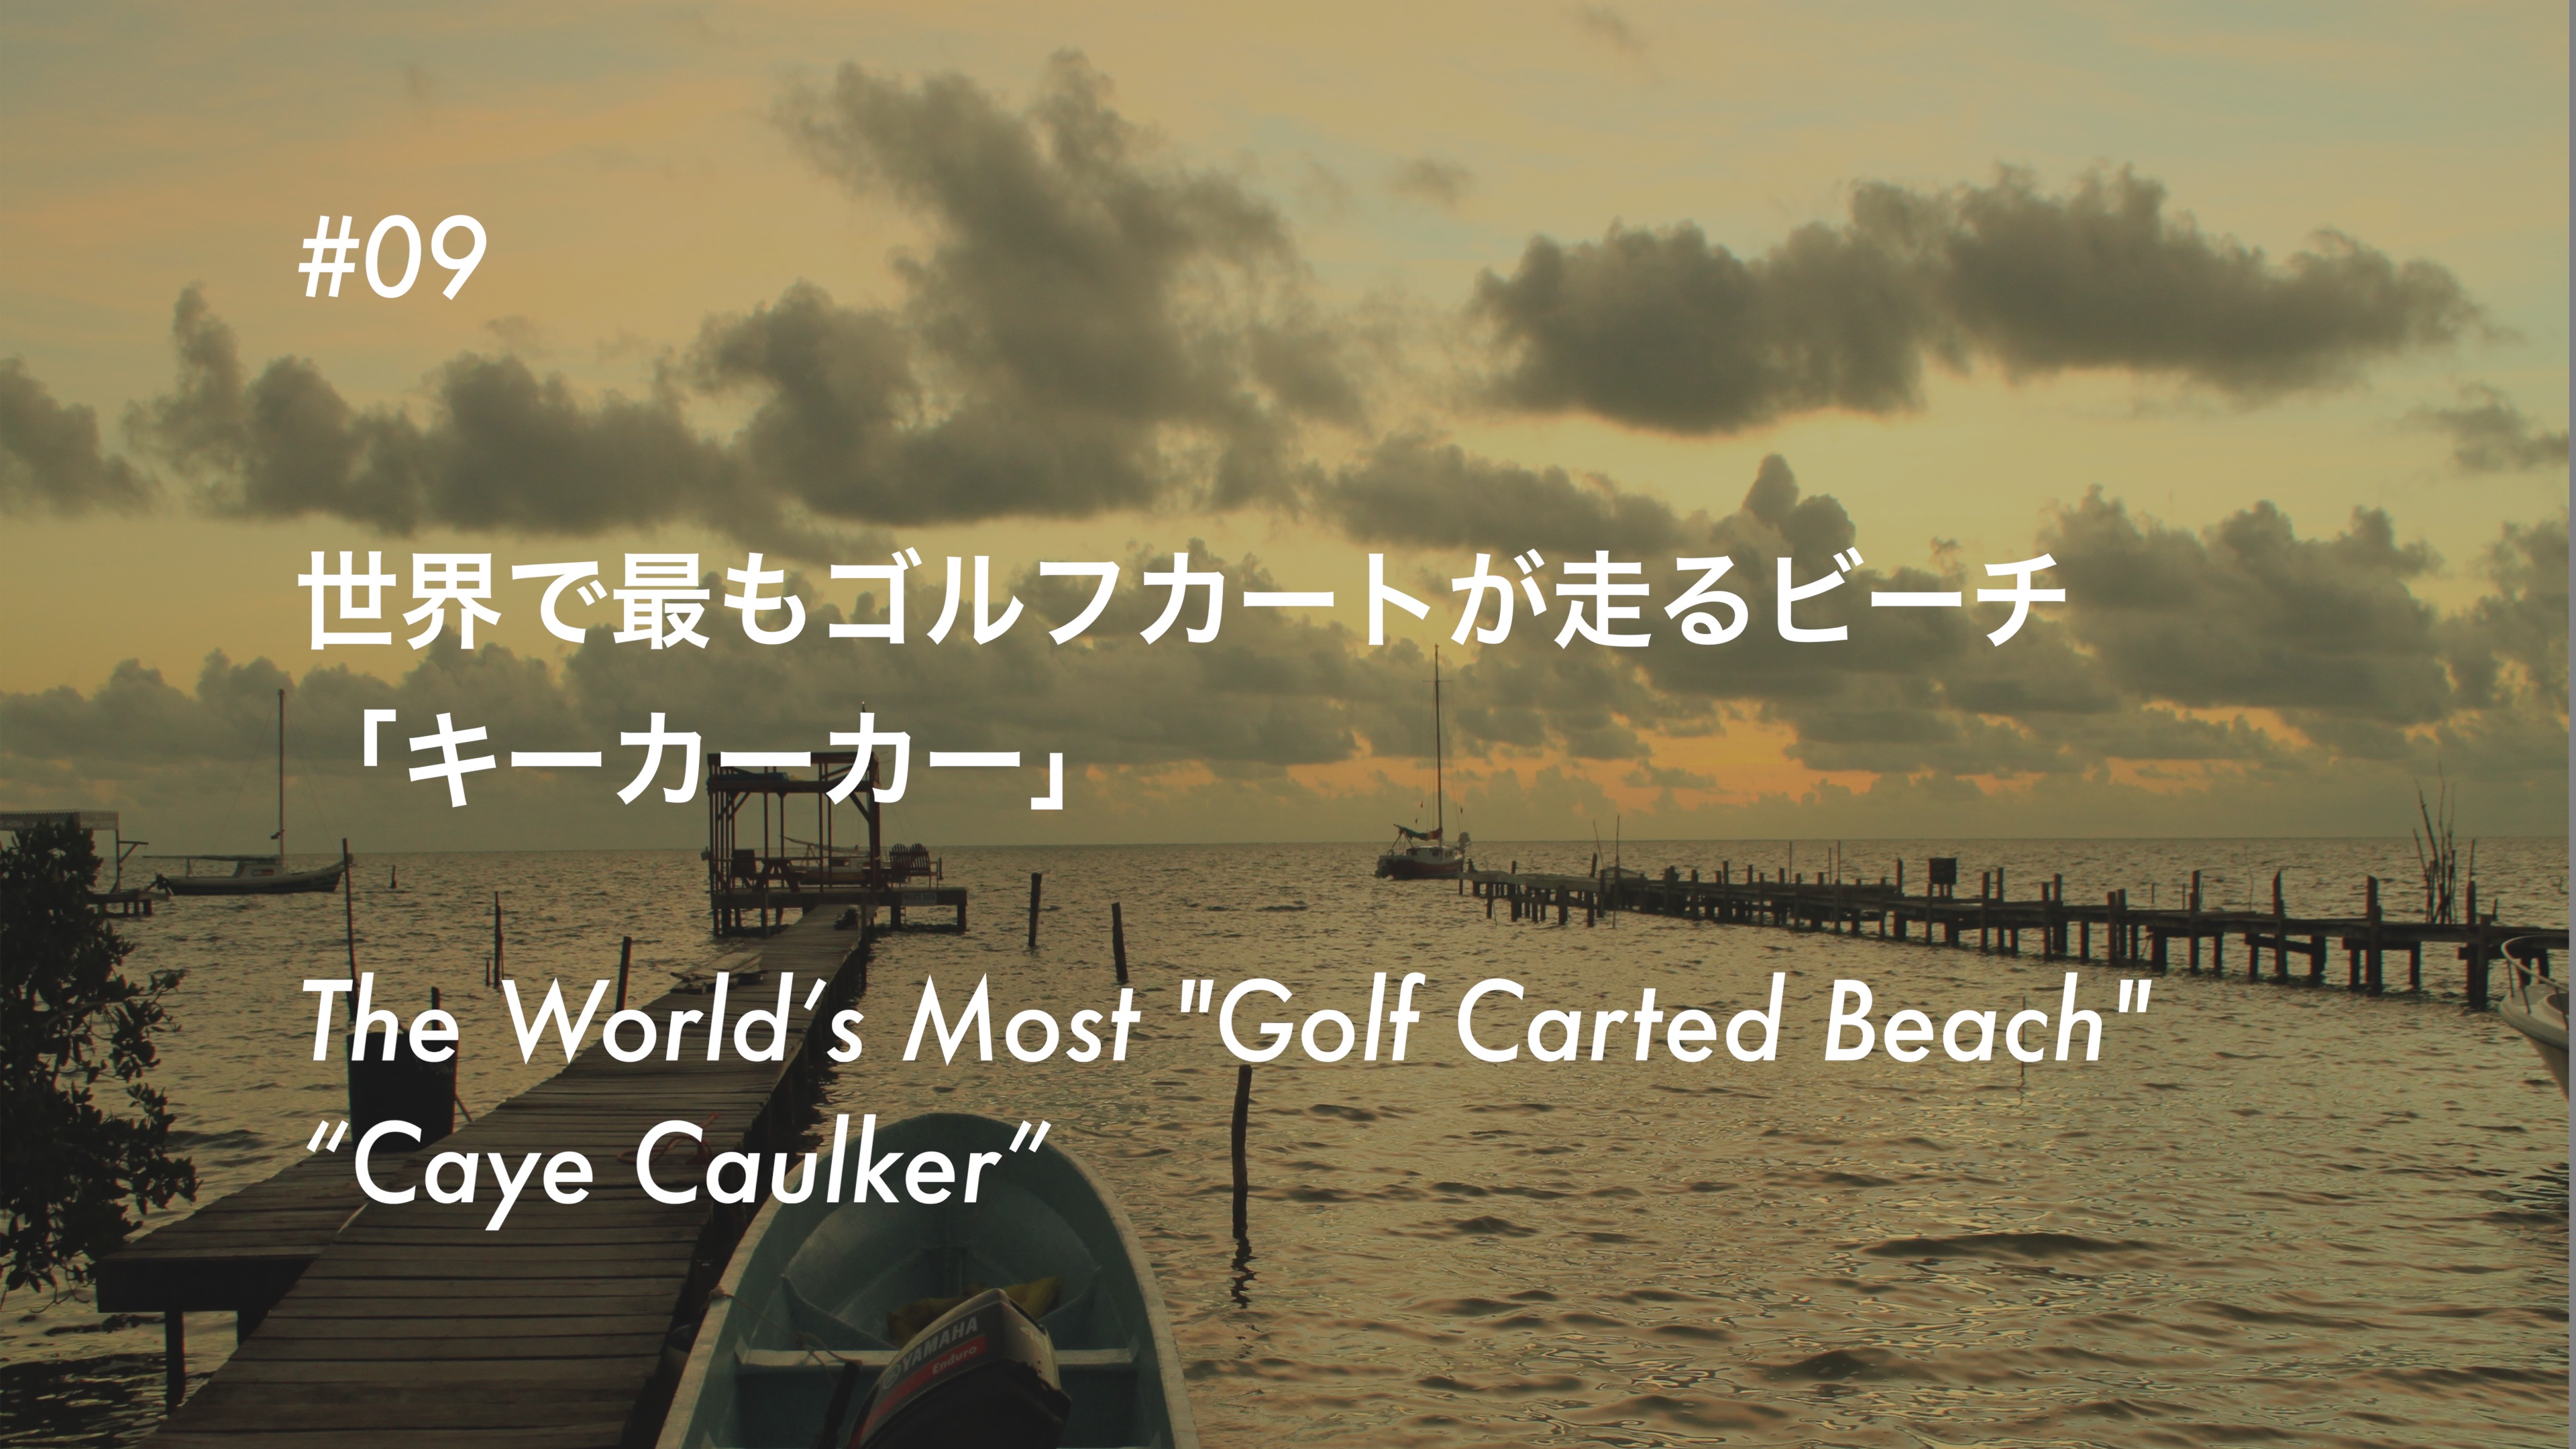 #09 世界で最もゴルフカートが走るビーチ 「キーカーカー」- The World’s Most ‘Golf Carted Beach’ “Caye Caulker”